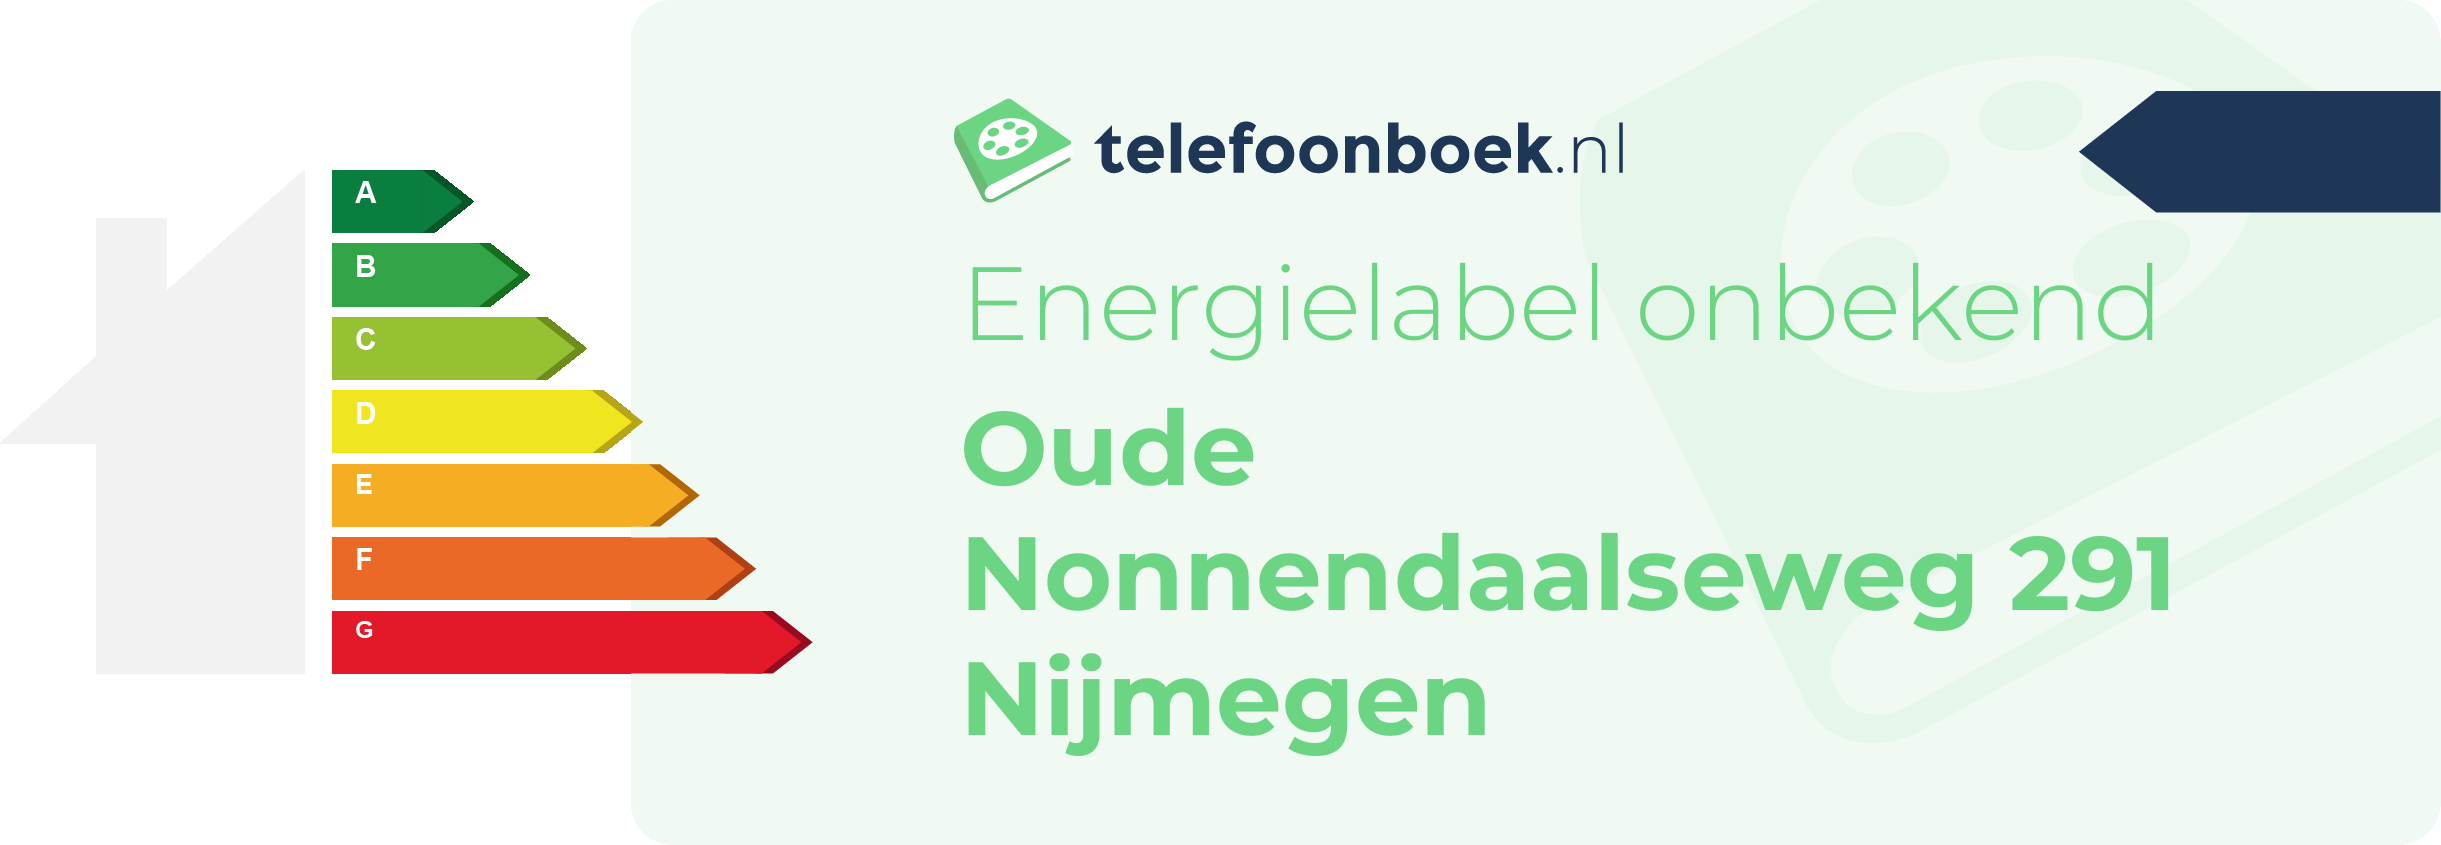 Energielabel Oude Nonnendaalseweg 291 Nijmegen